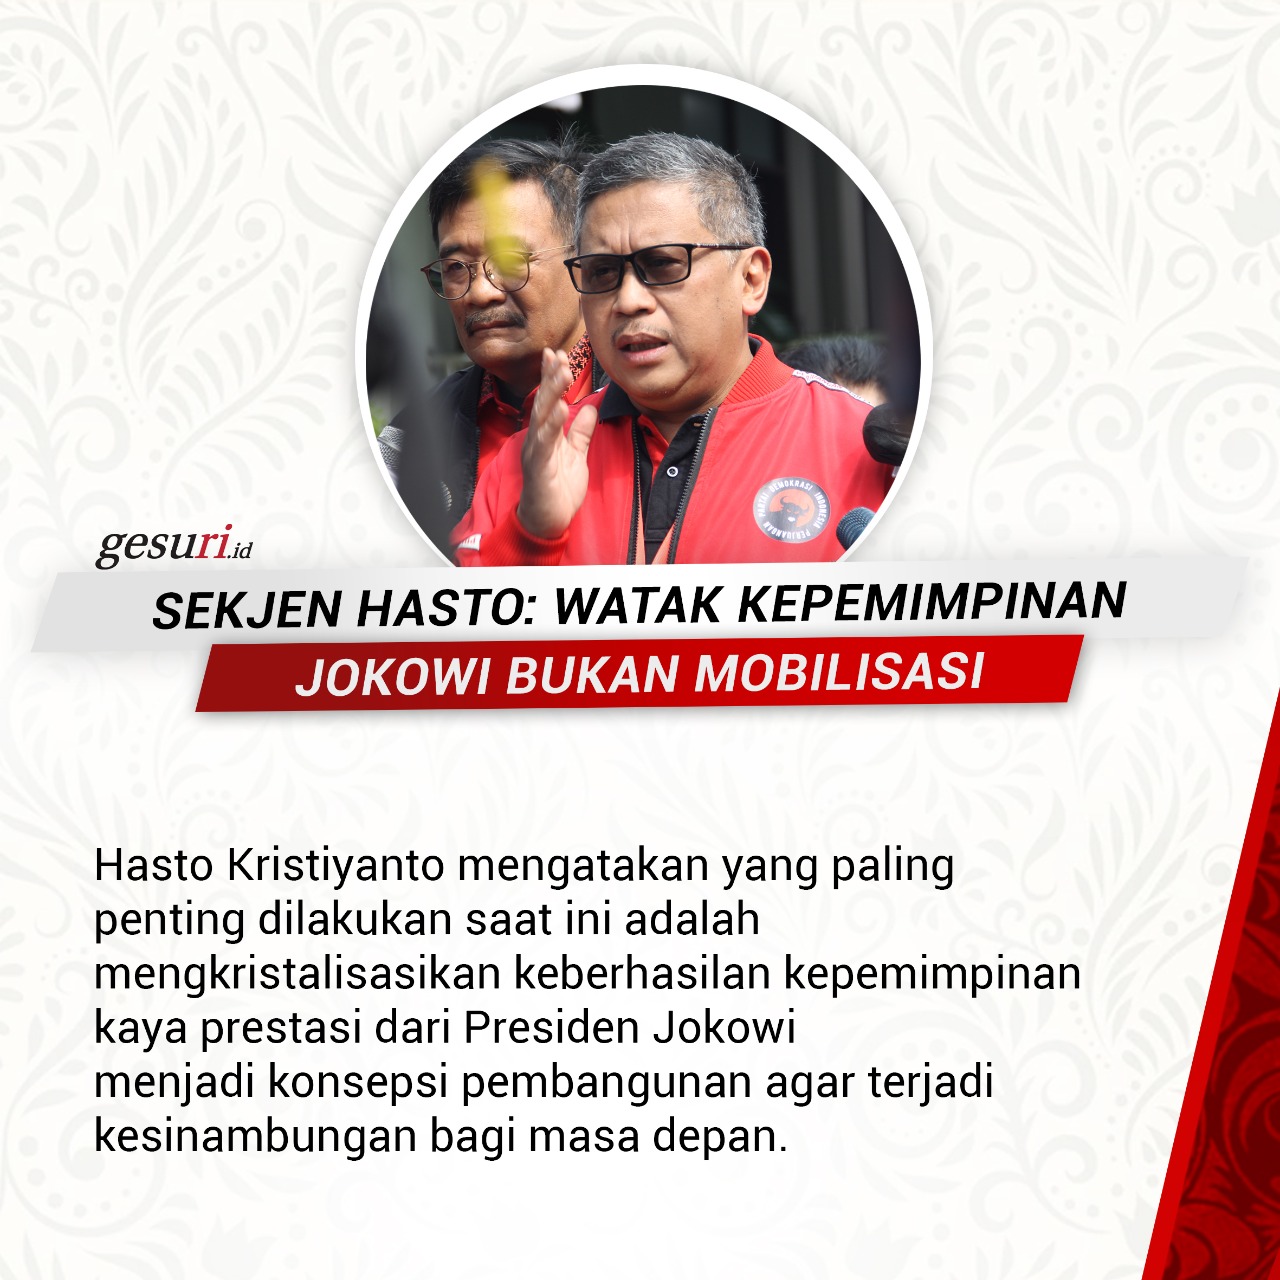 Hasto: Watak Kepemimpinan Jokowi Bukan Mobilisasi (1/8)